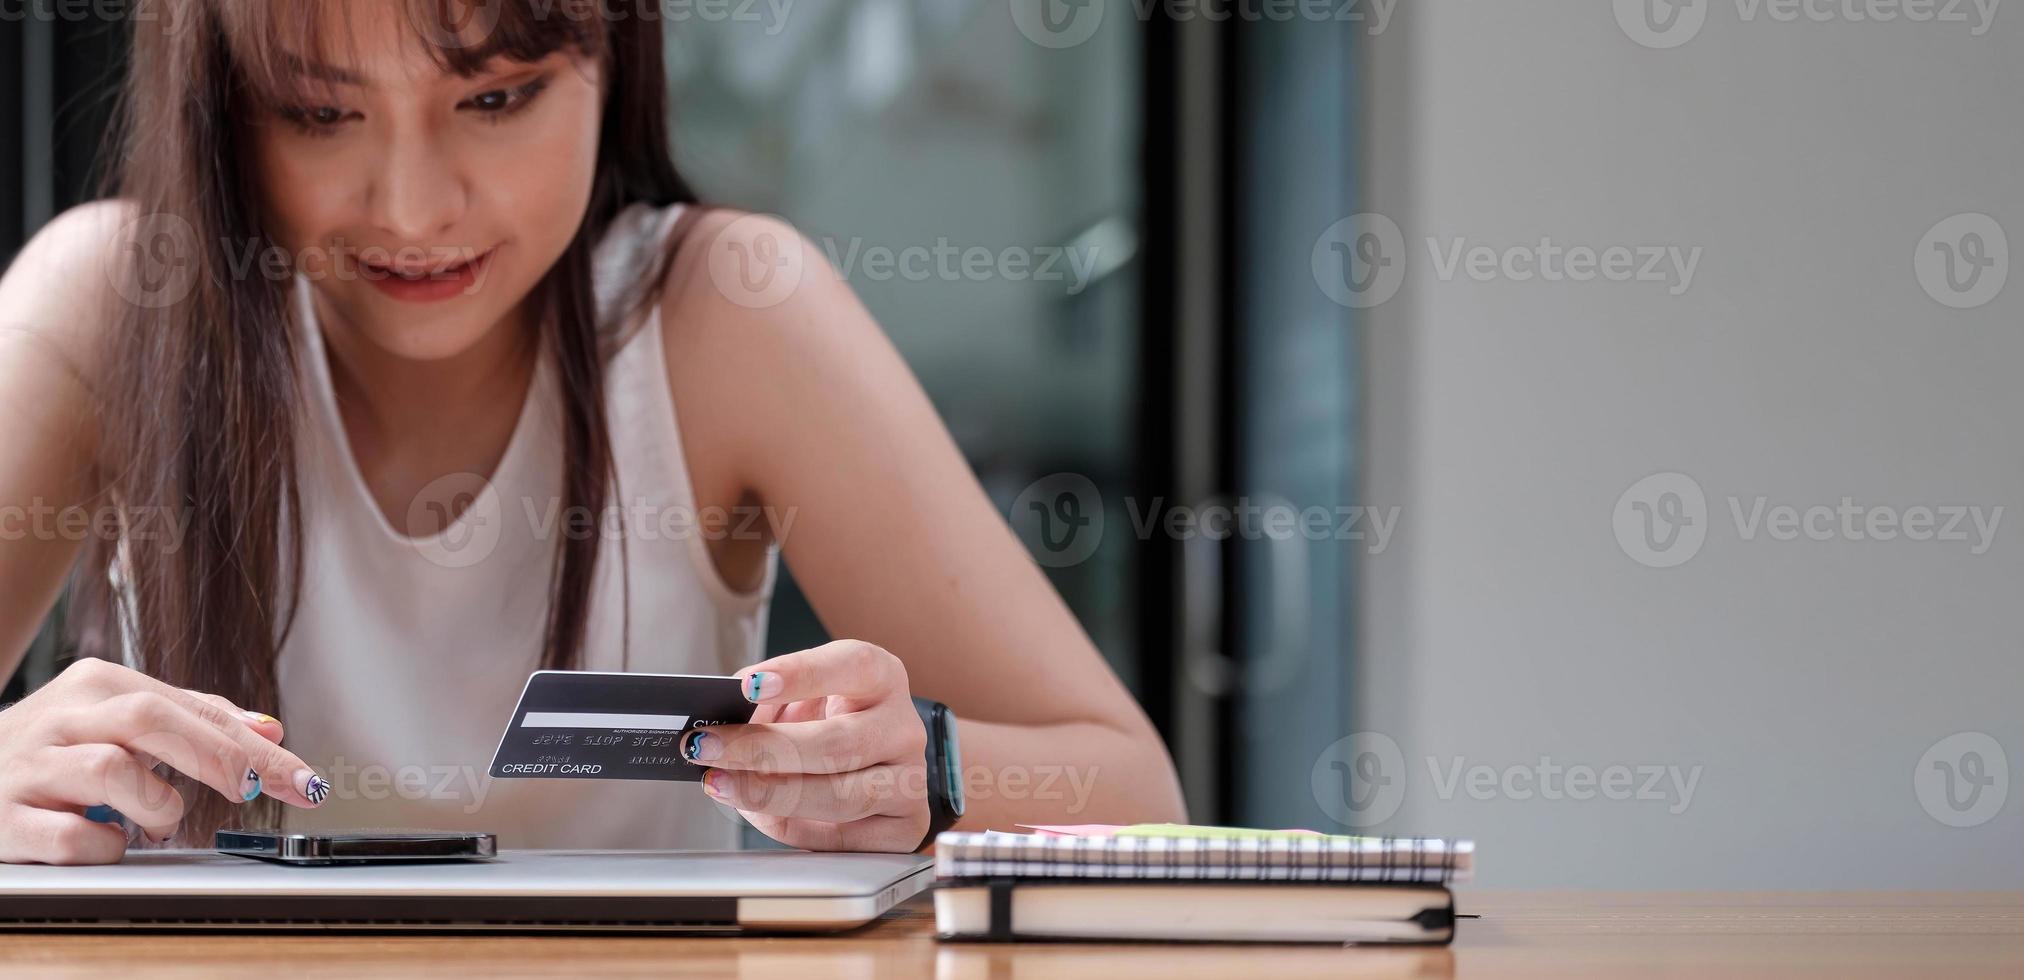 femme souriante utilise un téléphone portable pour faire des achats en ligne avec une carte de crédit photo